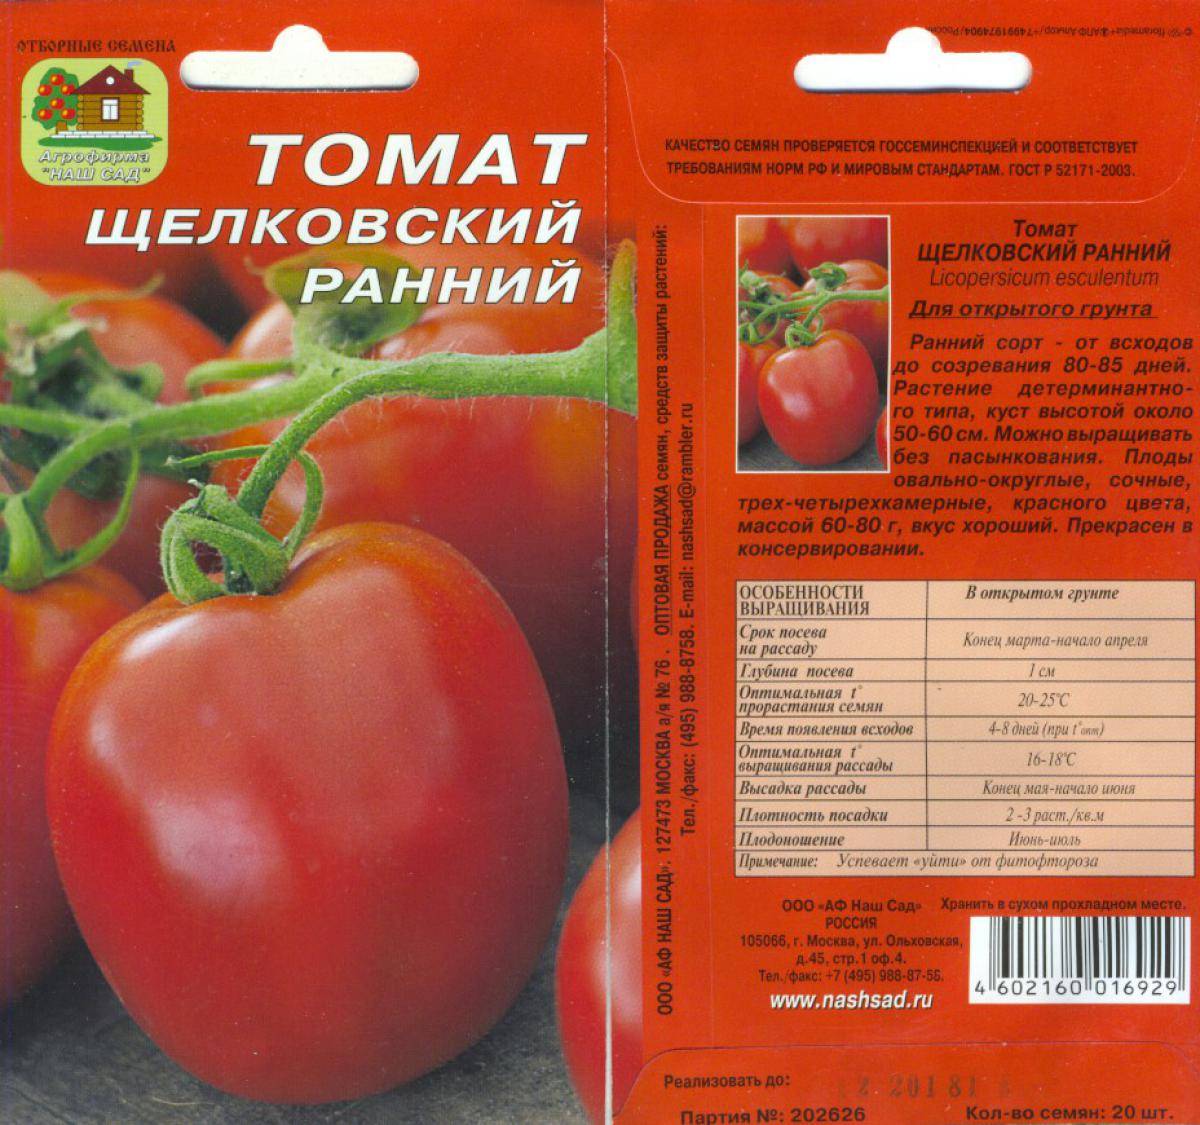 Как опылять помидоры в домашних условиях: 115 фото и видео рекомендации как опылить помидоры